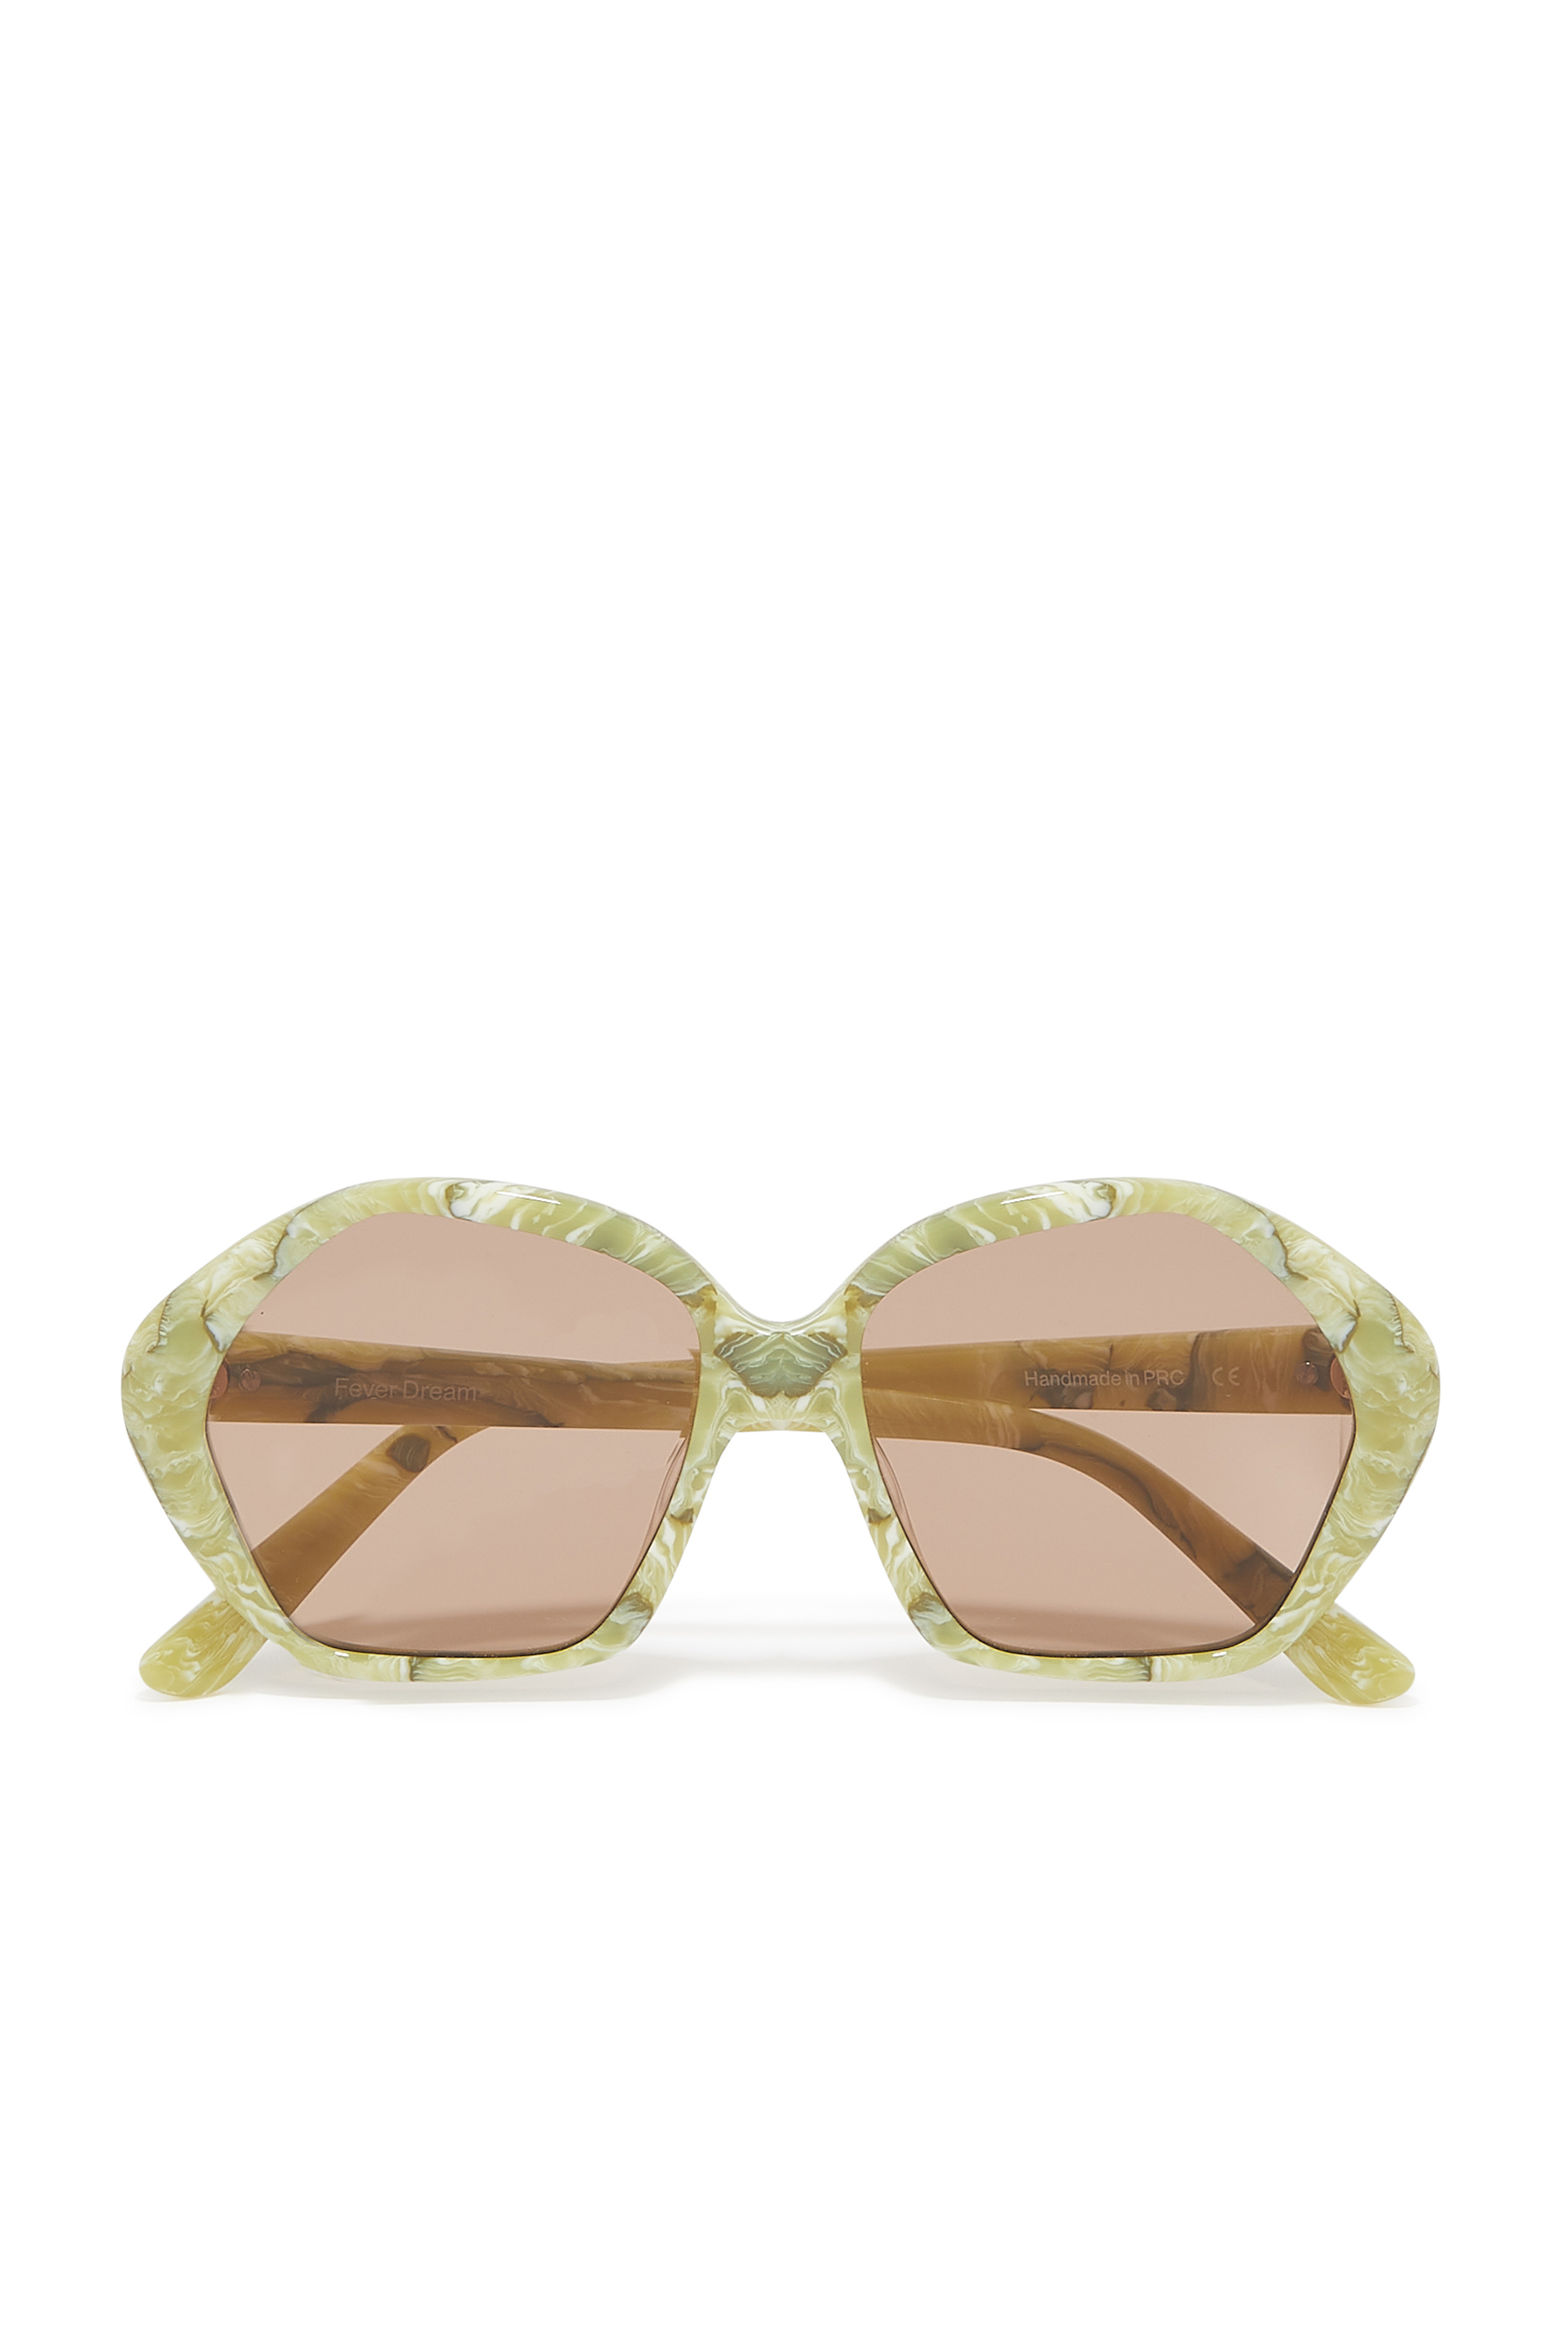 Buy Velvet Canyon Fever Dream Sunglasses for Womens | Bloomingdale's Qatar